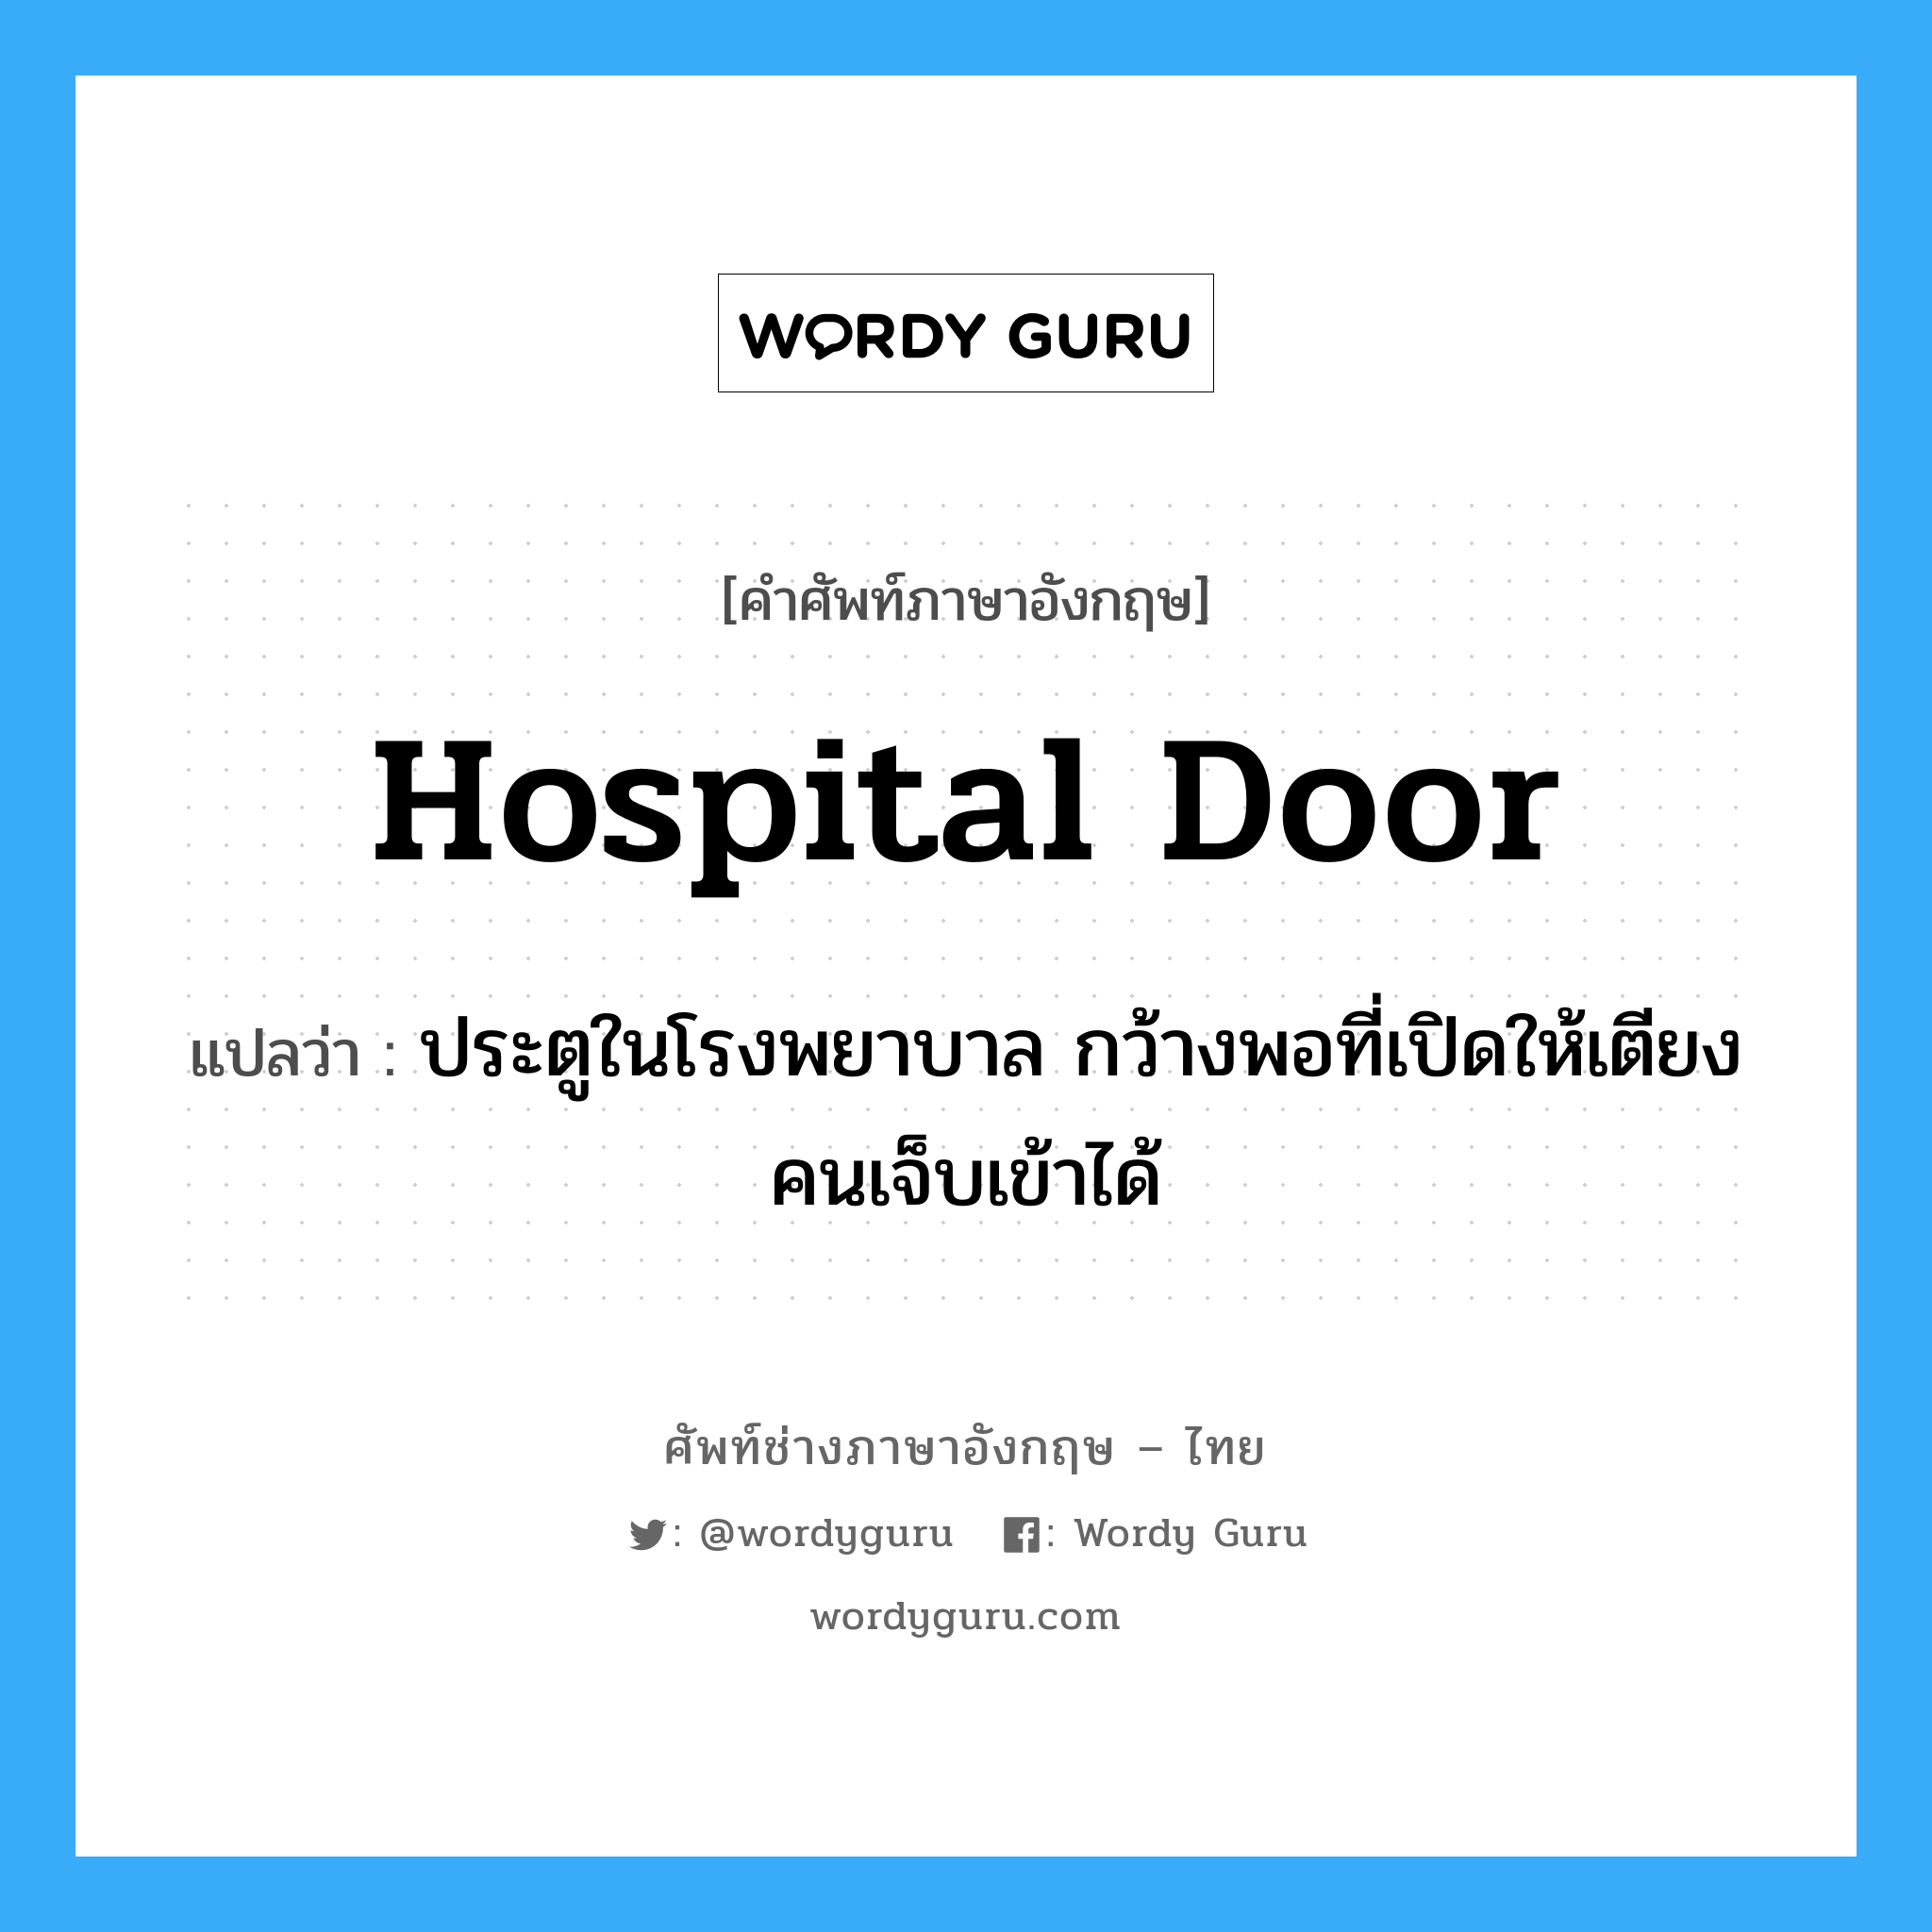 ประตูในโรงพยาบาล กว้างพอที่เปิดให้เตียงคนเจ็บเข้าได้ ภาษาอังกฤษ?, คำศัพท์ช่างภาษาอังกฤษ - ไทย ประตูในโรงพยาบาล กว้างพอที่เปิดให้เตียงคนเจ็บเข้าได้ คำศัพท์ภาษาอังกฤษ ประตูในโรงพยาบาล กว้างพอที่เปิดให้เตียงคนเจ็บเข้าได้ แปลว่า hospital door